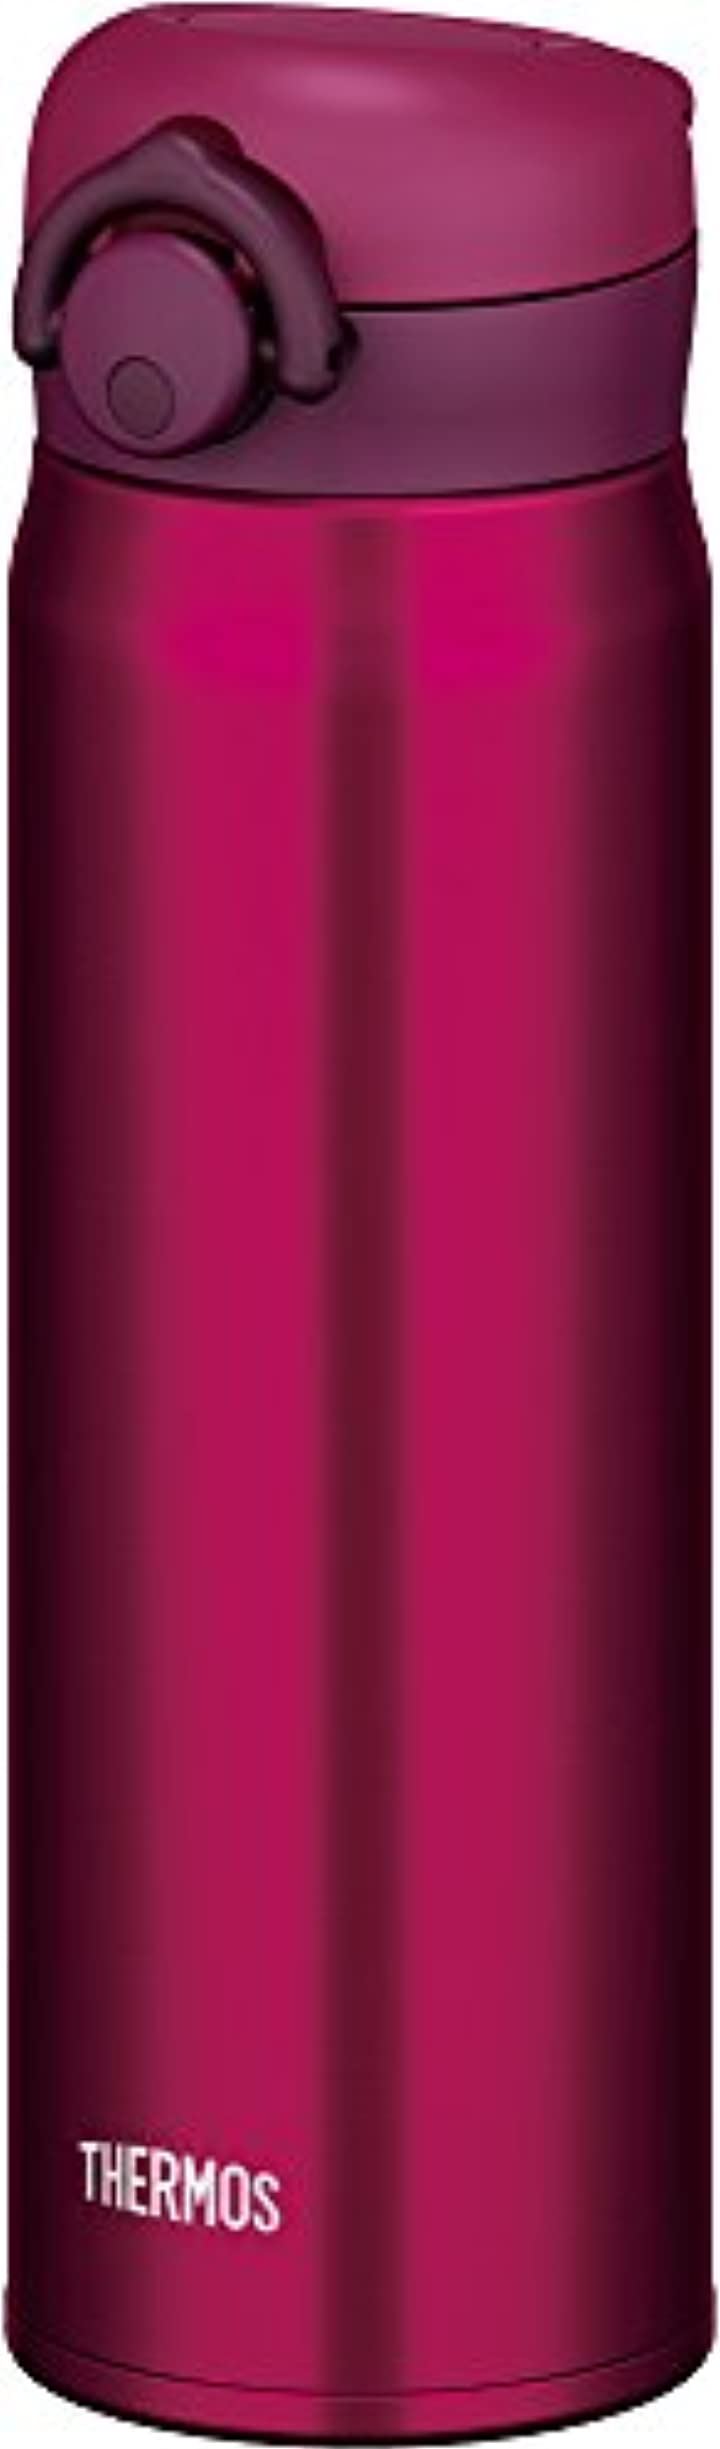 水筒 真空断熱ケータイマグ ワンタッチオープンタイプ 500ml JNR-500 正規品 ワインレッド WN 有名な高級ブランド